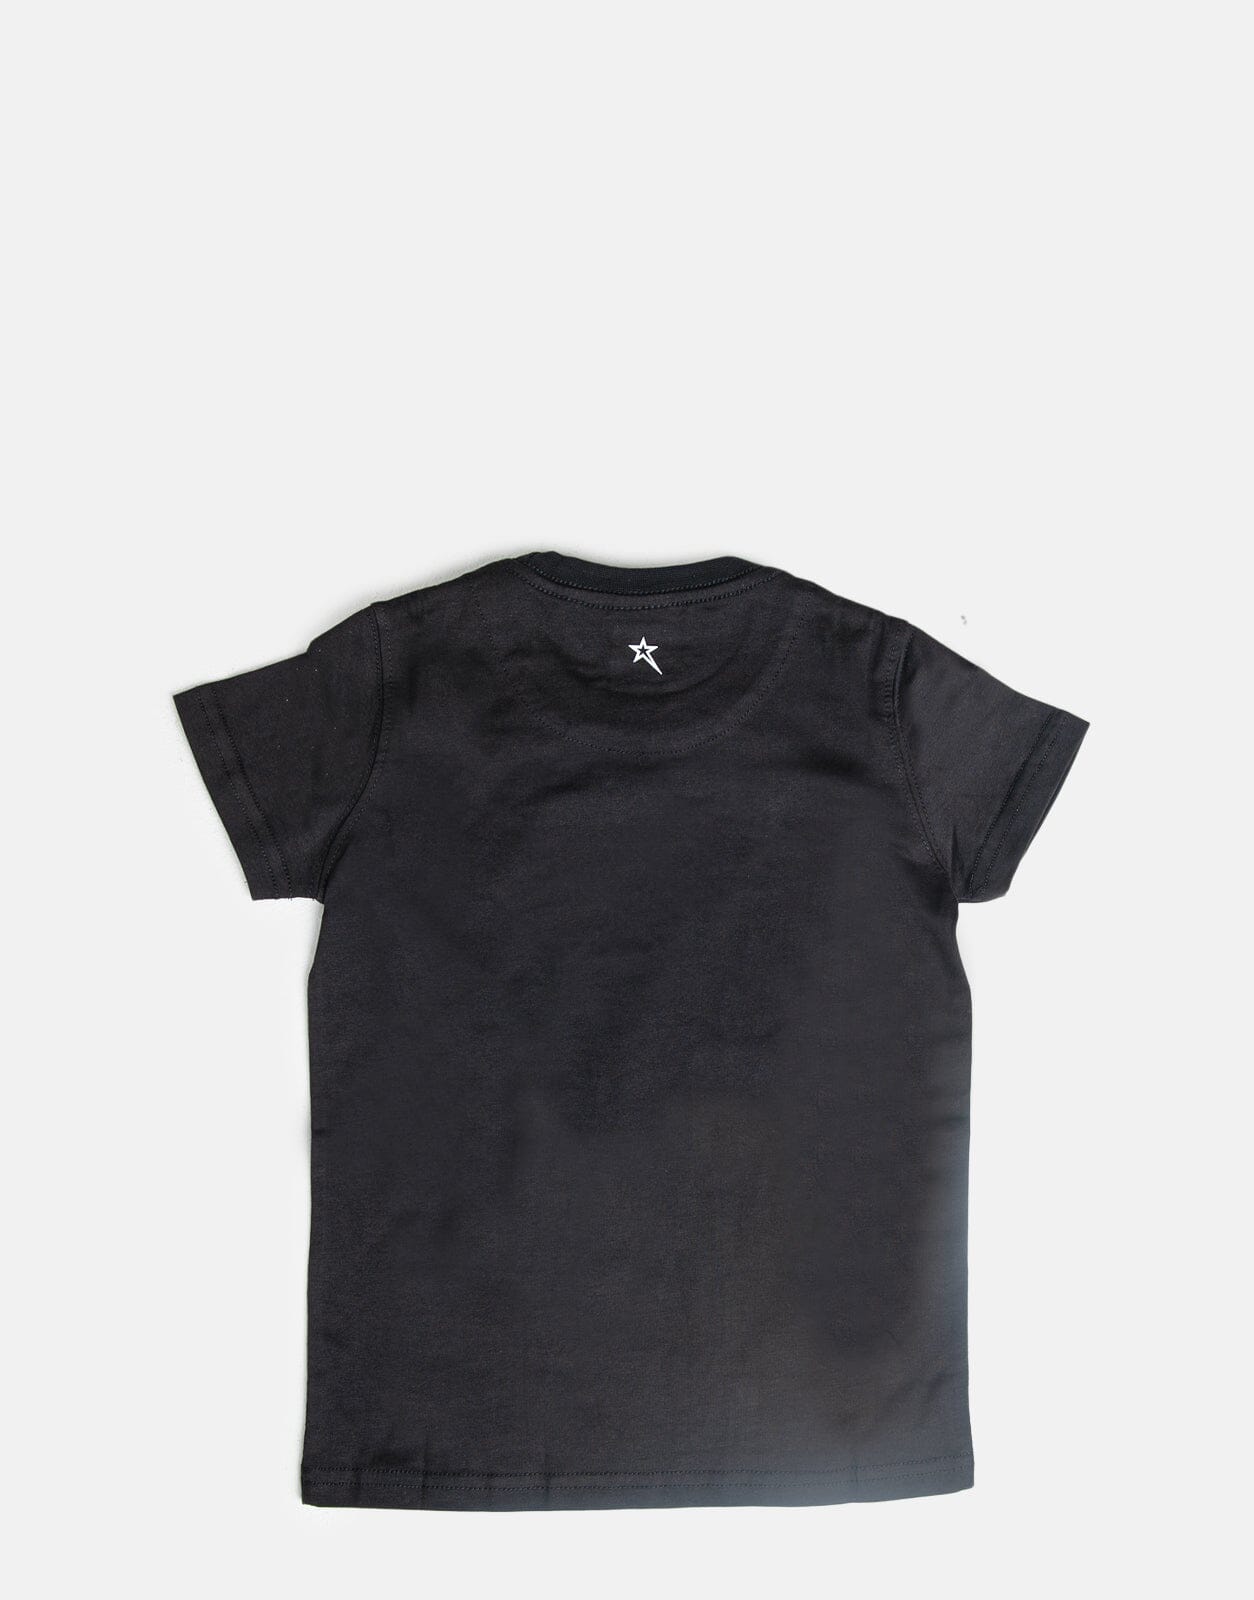 Soviet B Navigator T-Shirt Black - Subwear